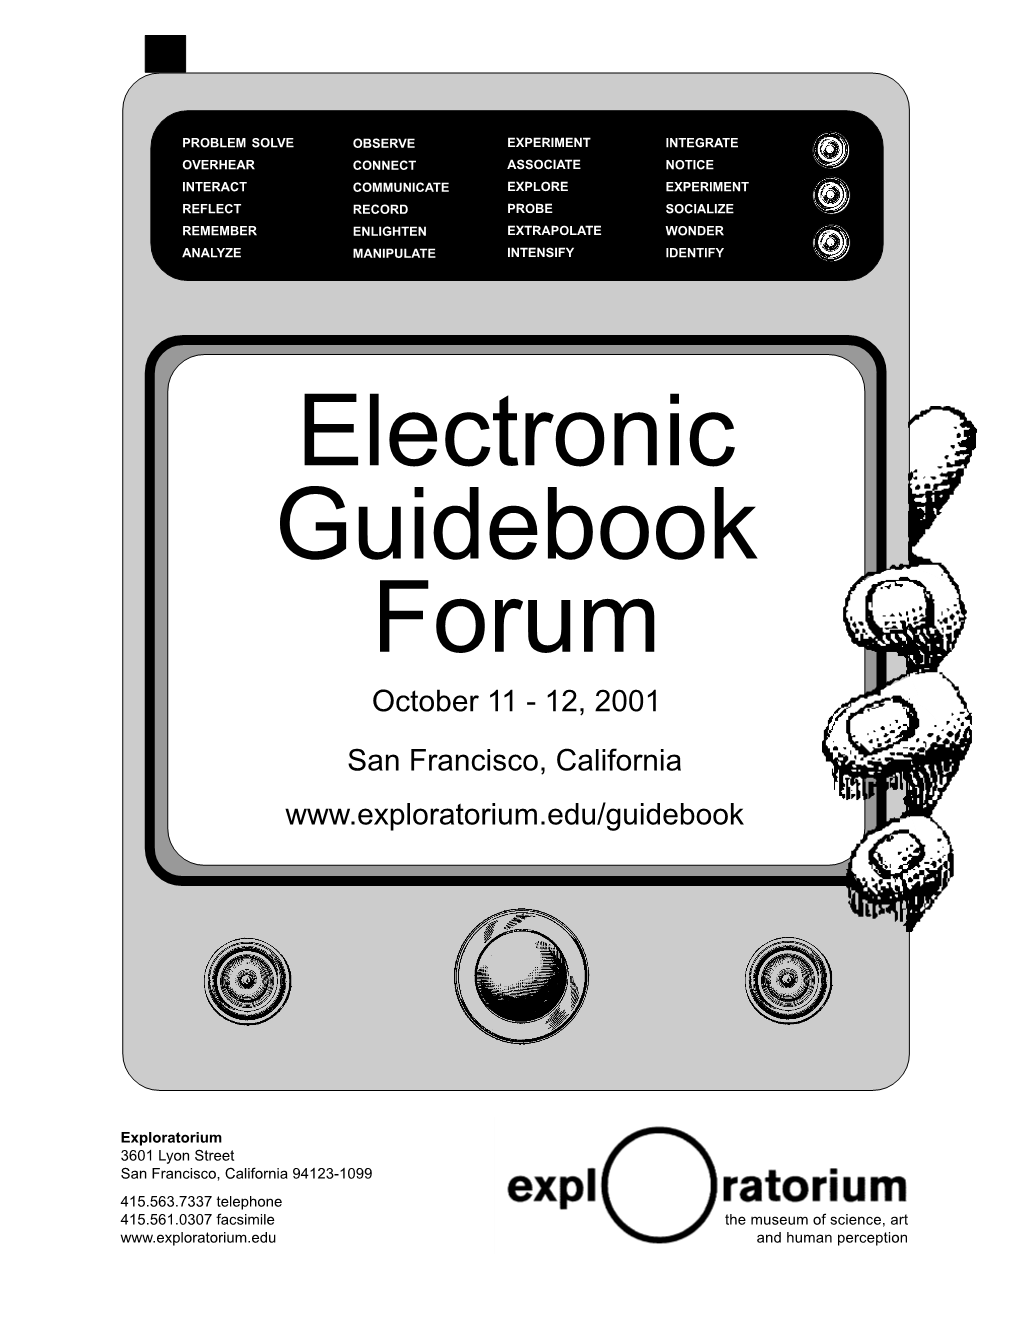 Electronic Guidebook Forum October 11 - 12, 2001 San Francisco, California